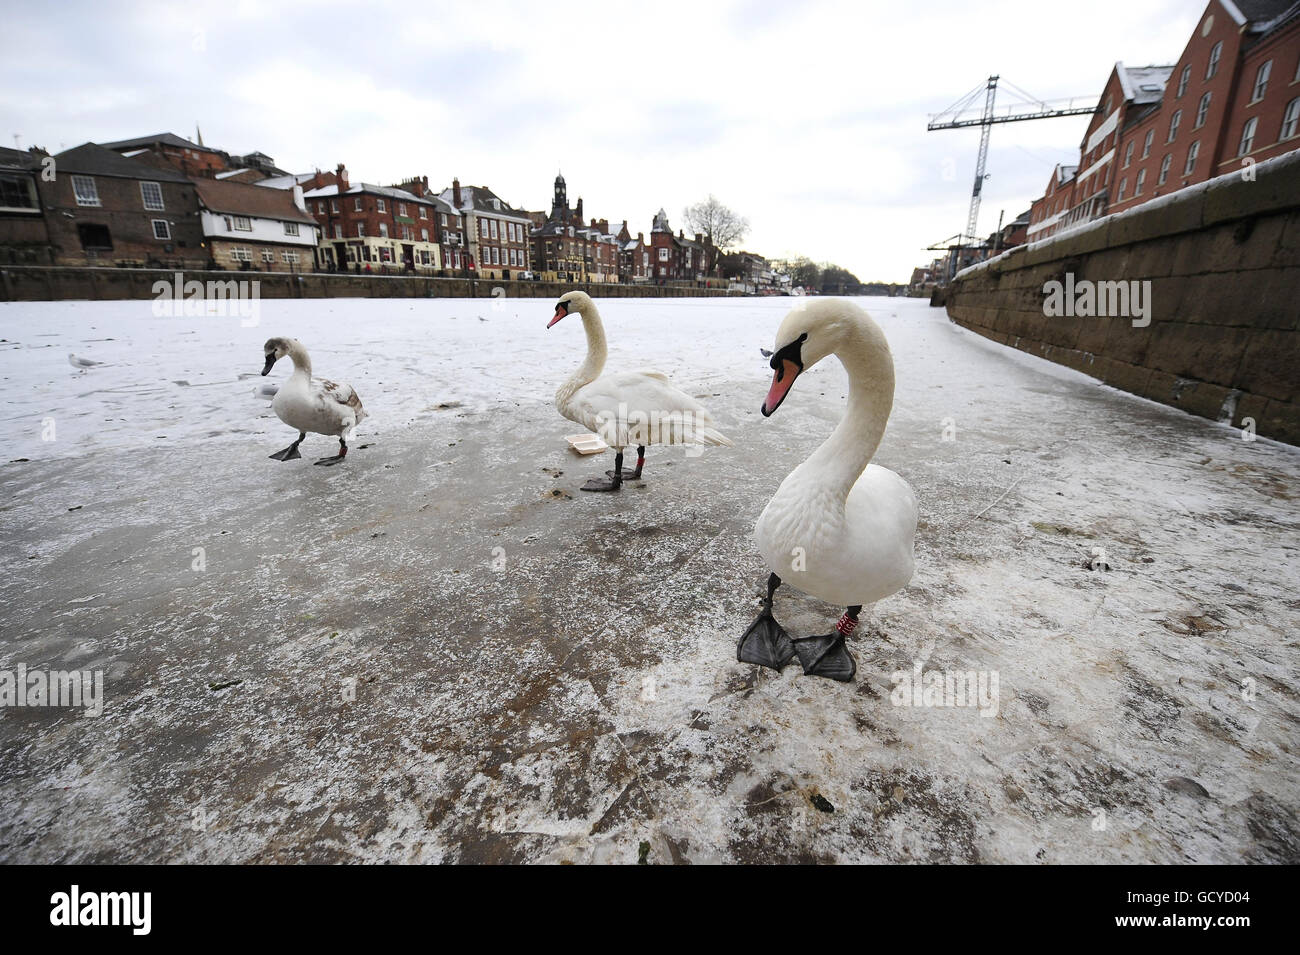 Die River Ouse ist heute in der Stadt York vollständig gefroren, da die Tiefkühltruhe in Großbritannien andauert. Stockfoto